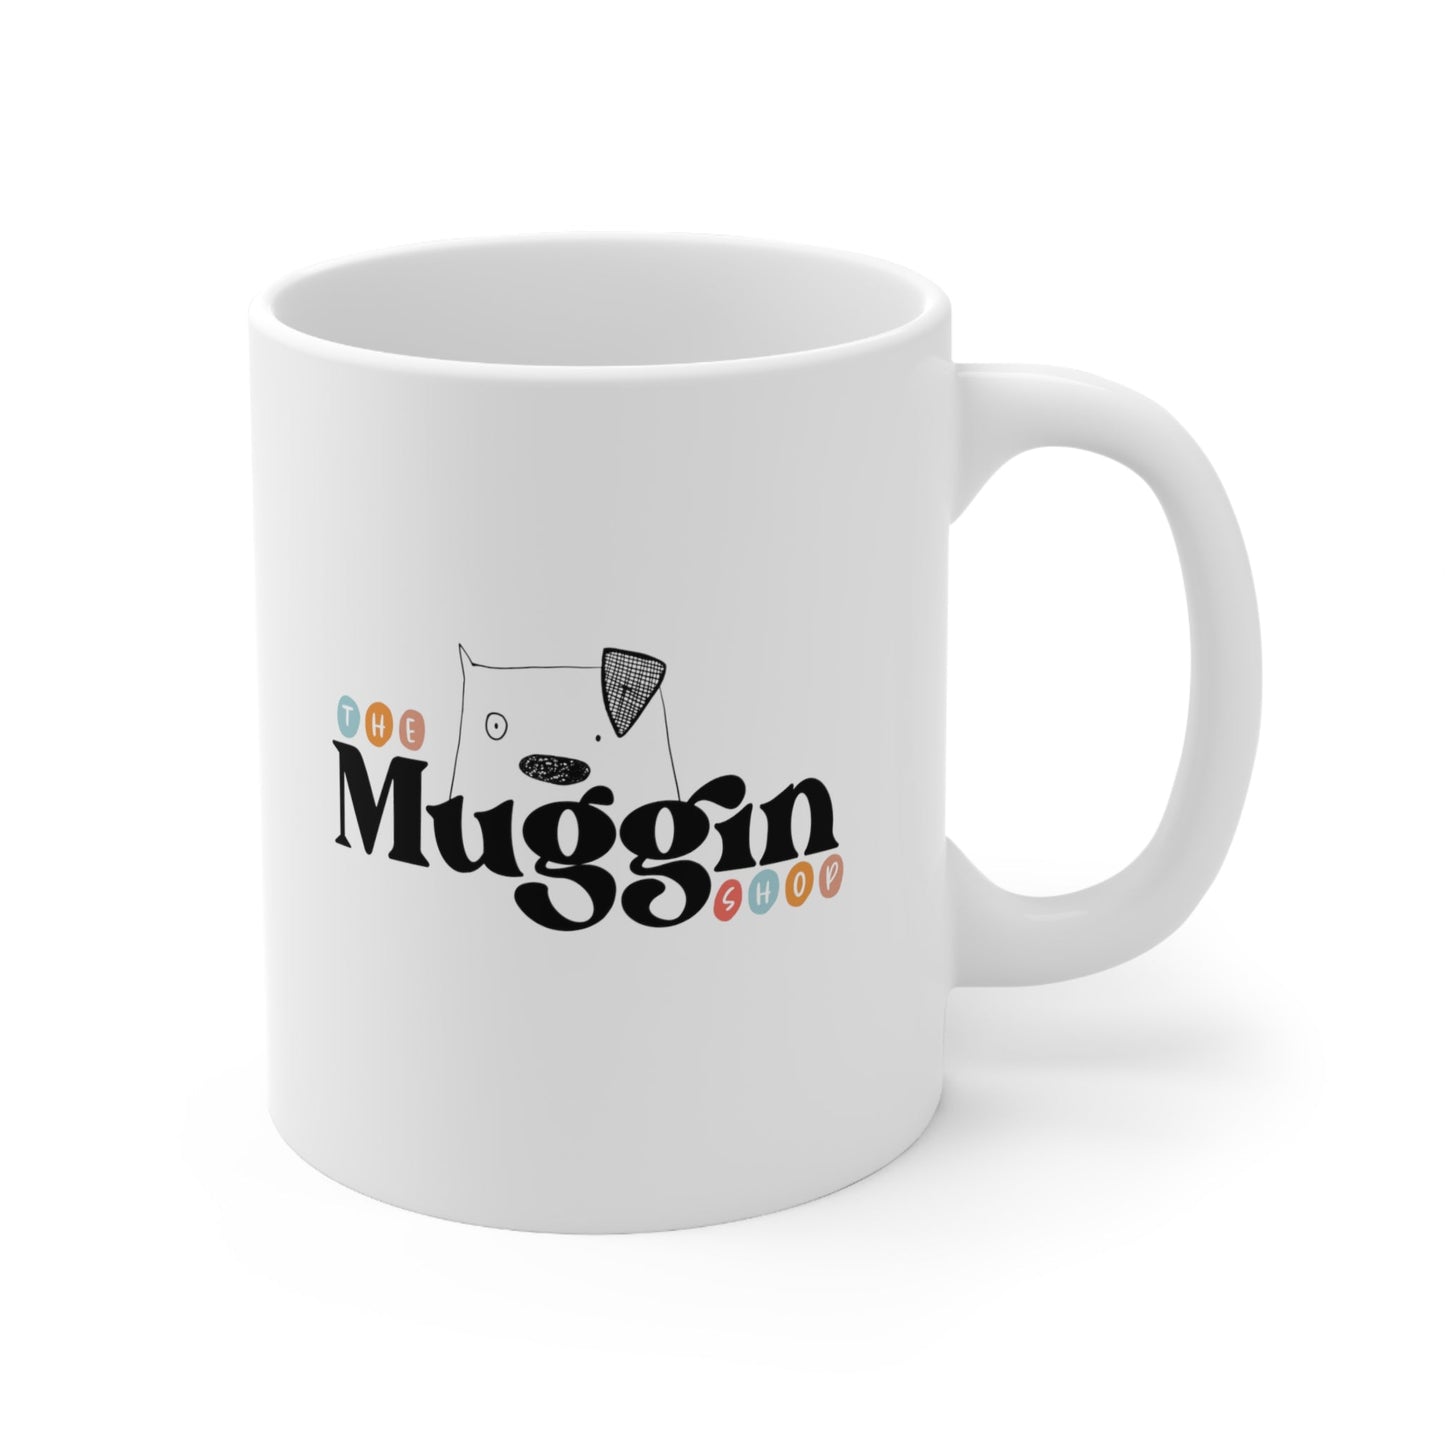 The Muggin Shop logo mug - The muggin shop